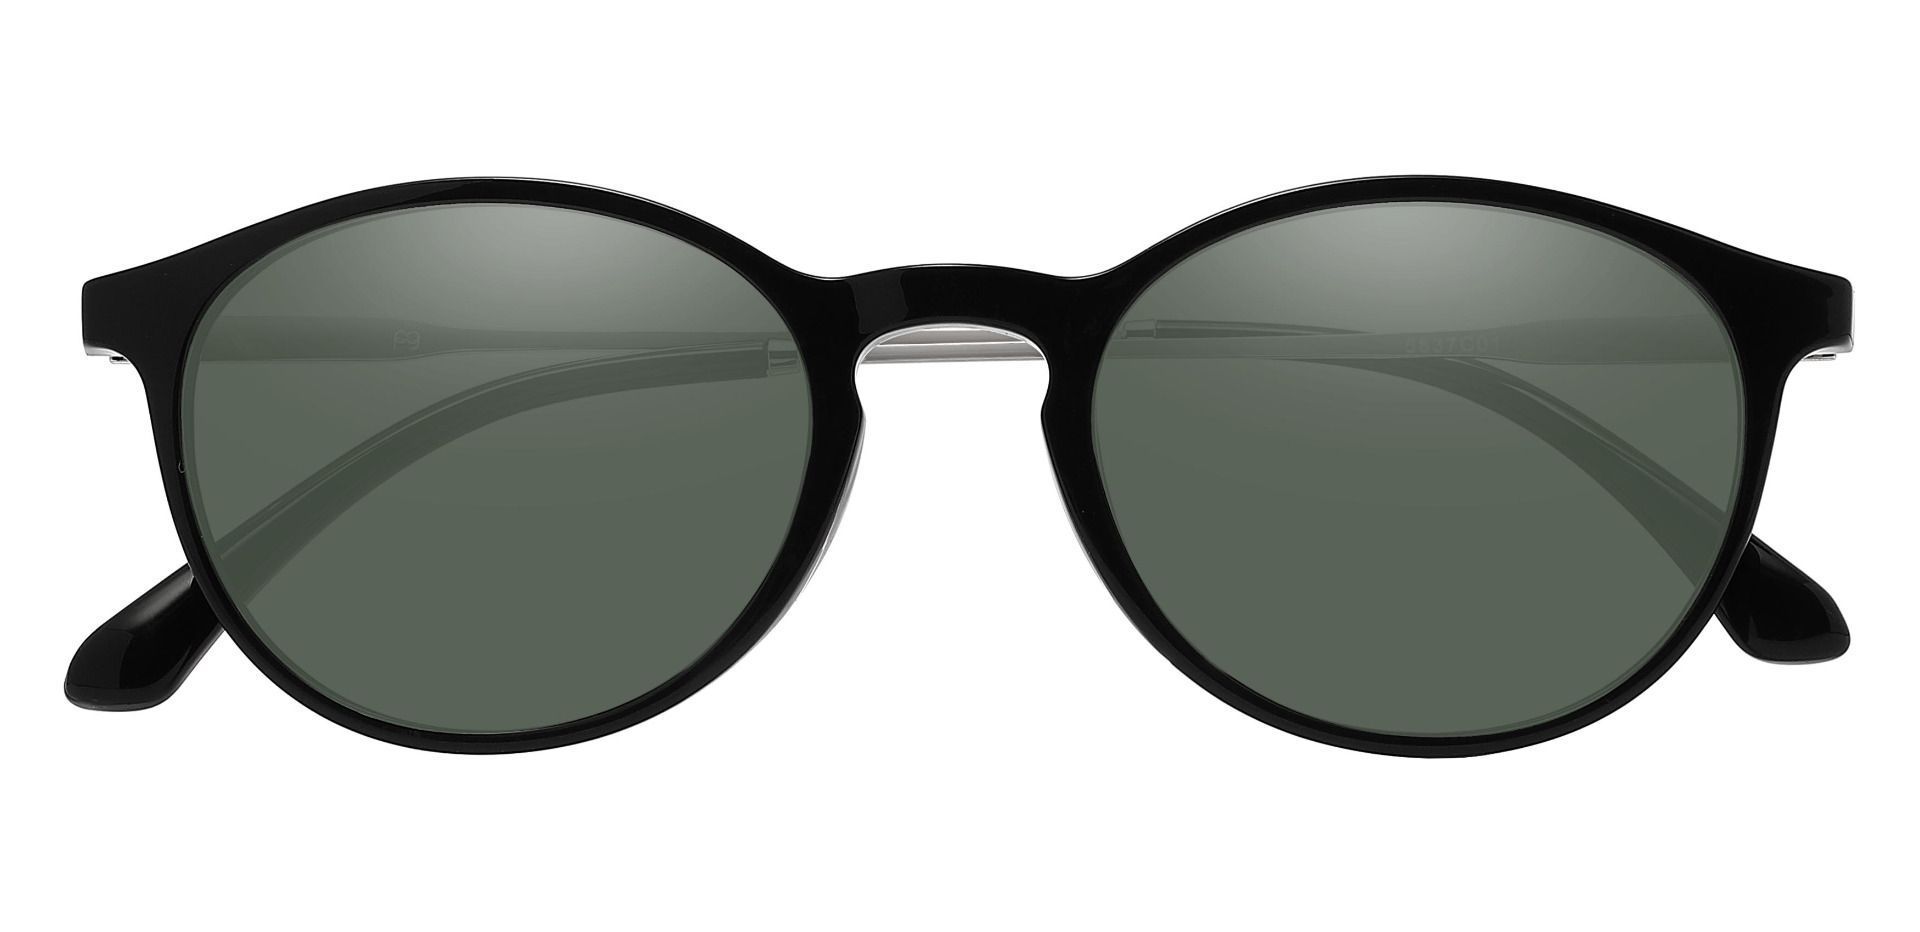 Felton Oval Progressive Sunglasses - Black Frame With Green Lenses